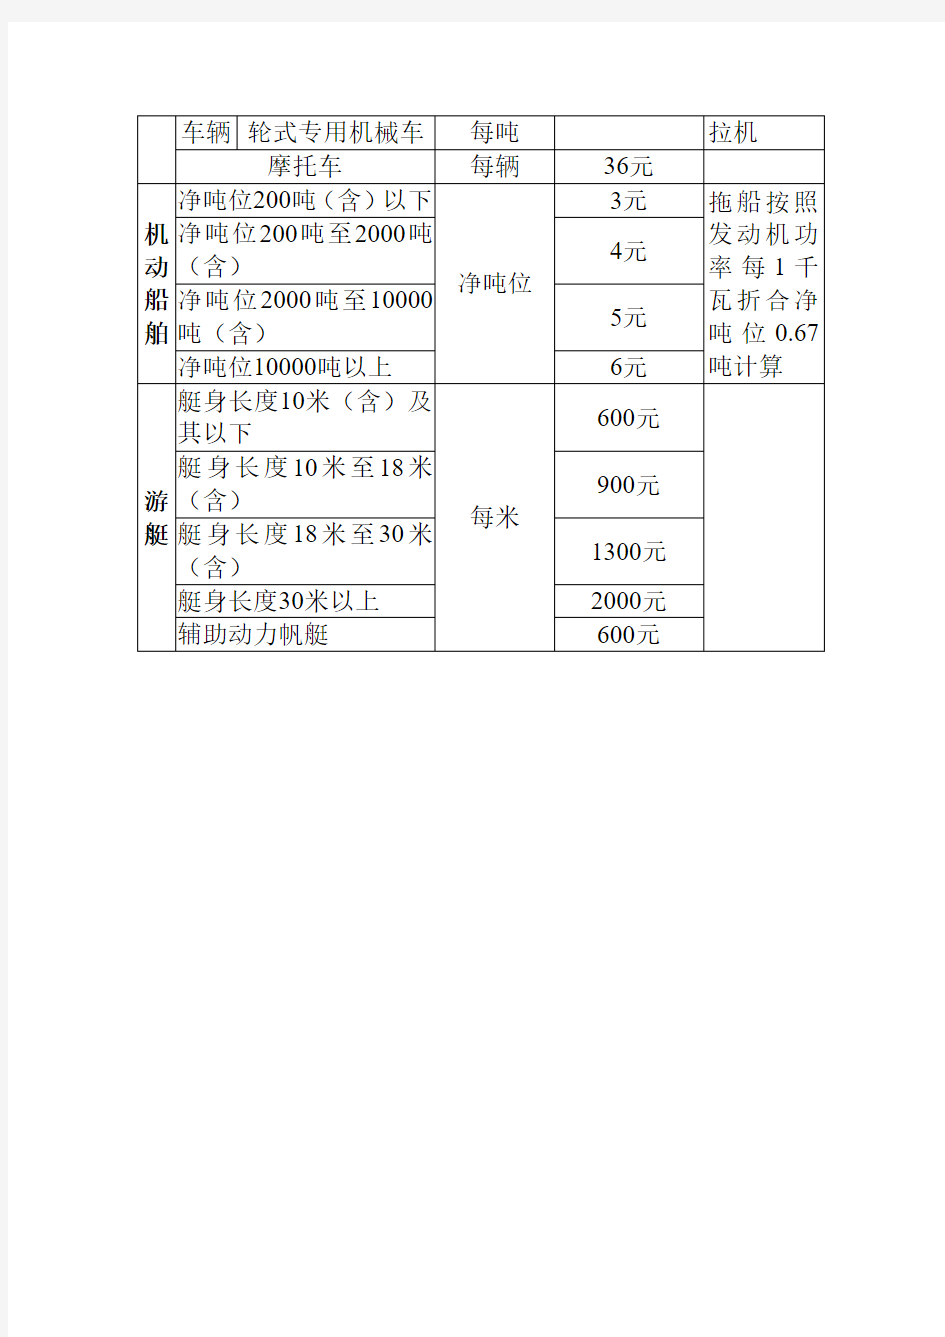 重庆市车船税税目税额表